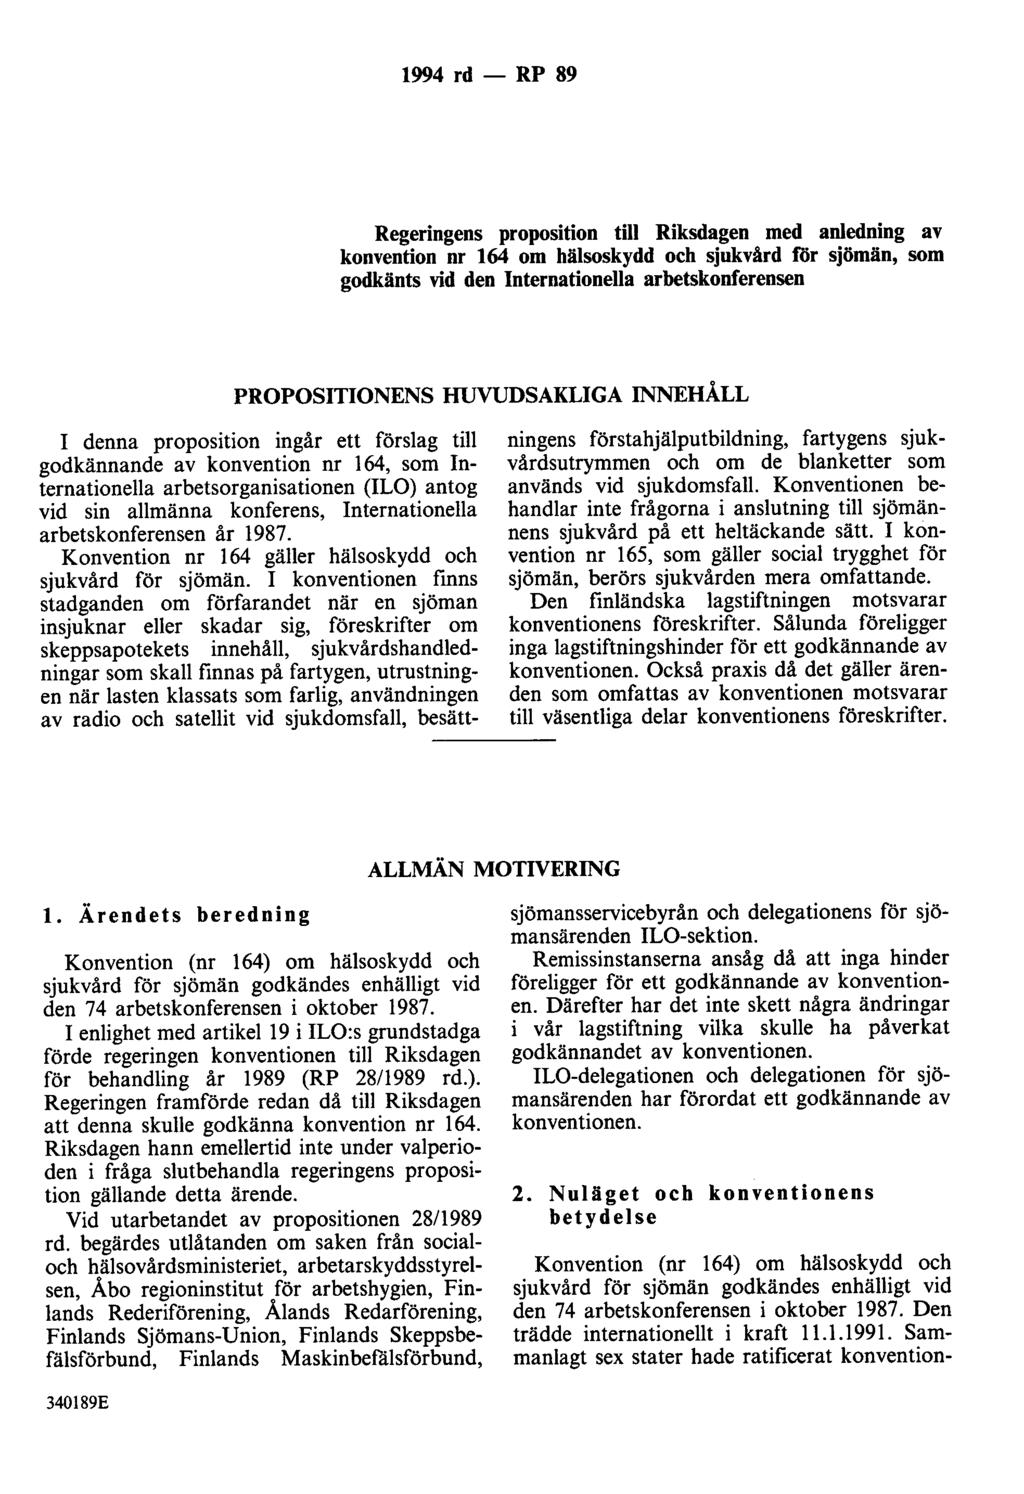 1994 rd- RP 89 Regeringens proposition till Riksdagen med anledning av konvention nr 164 om hälsoskydd och sjukvård för sjömän, som godkänts vid den Internationella arbetskonferensen PROPOSITIONENS